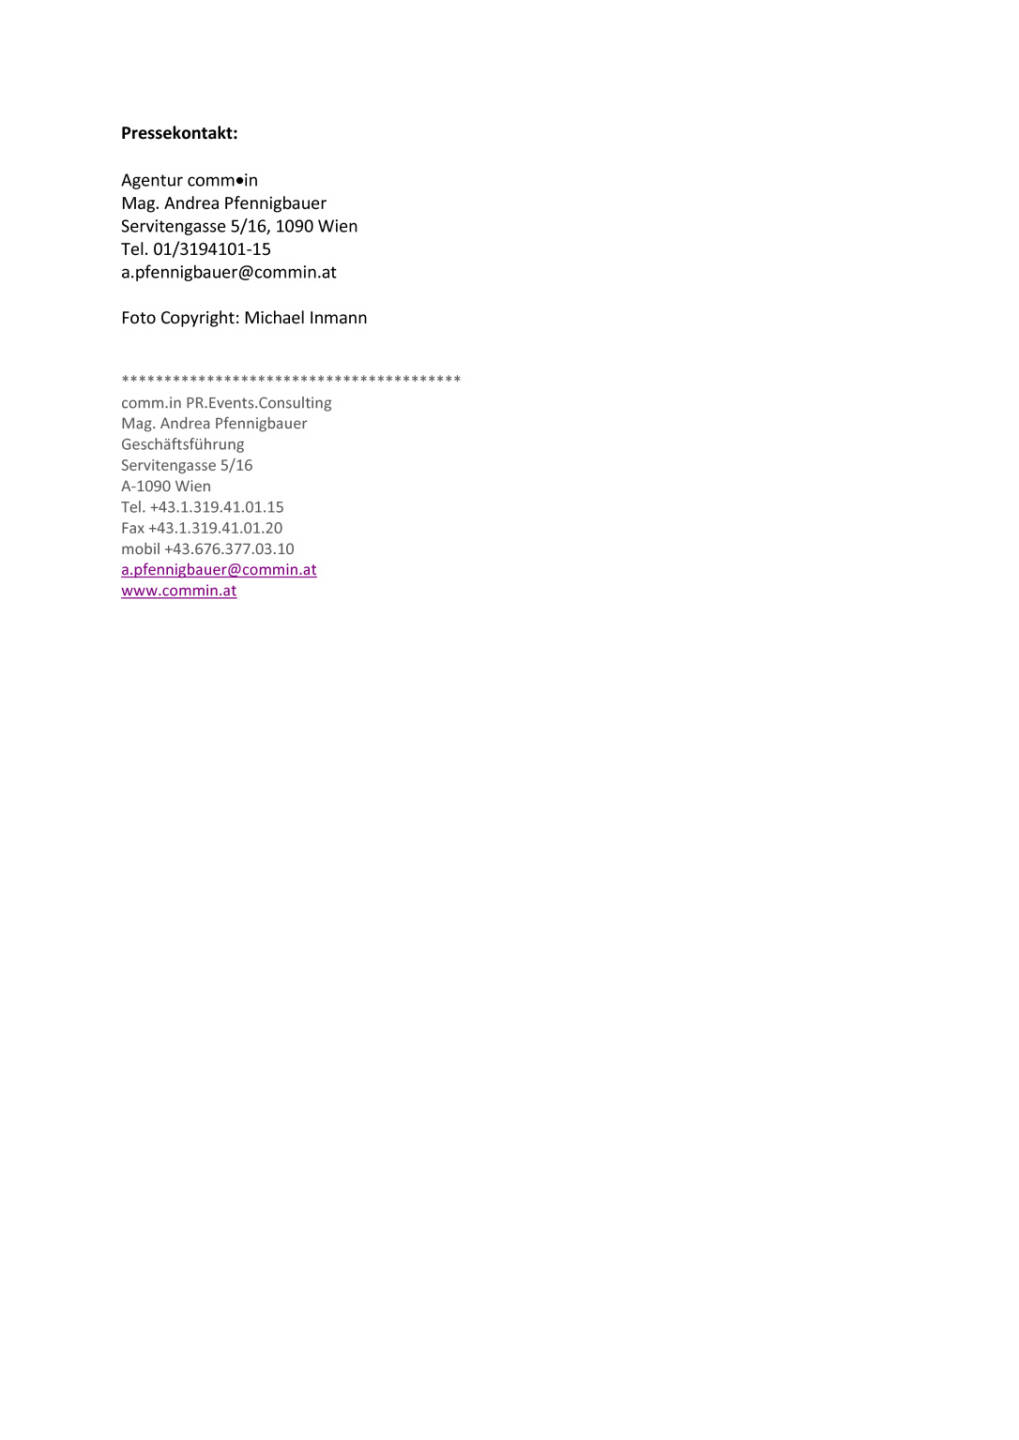 Verag Versicherungsmakler GmbH stockt Führungsebene auf, Seite 3/3, komplettes Dokument unter http://boerse-social.com/static/uploads/file_1472_verag_versicherungsmakler_gmbh_stockt_fuhrungsebene_auf.pdf